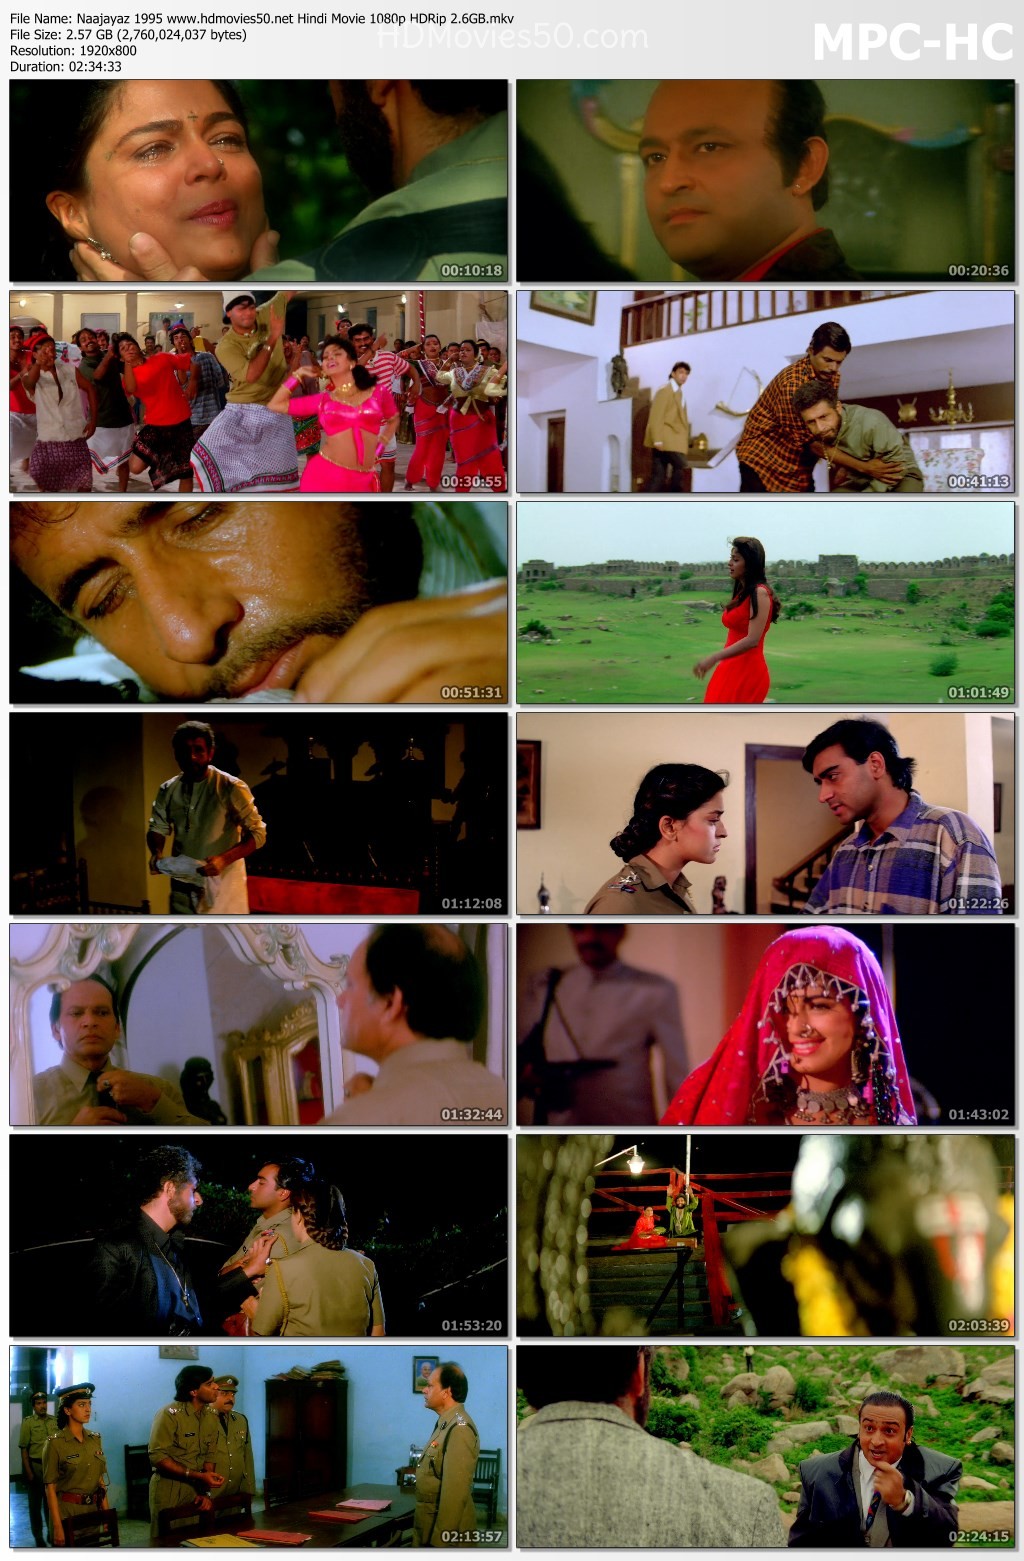 Naajayaz 1995 Hindi Movie 1080p HDRip 2.61GB Download